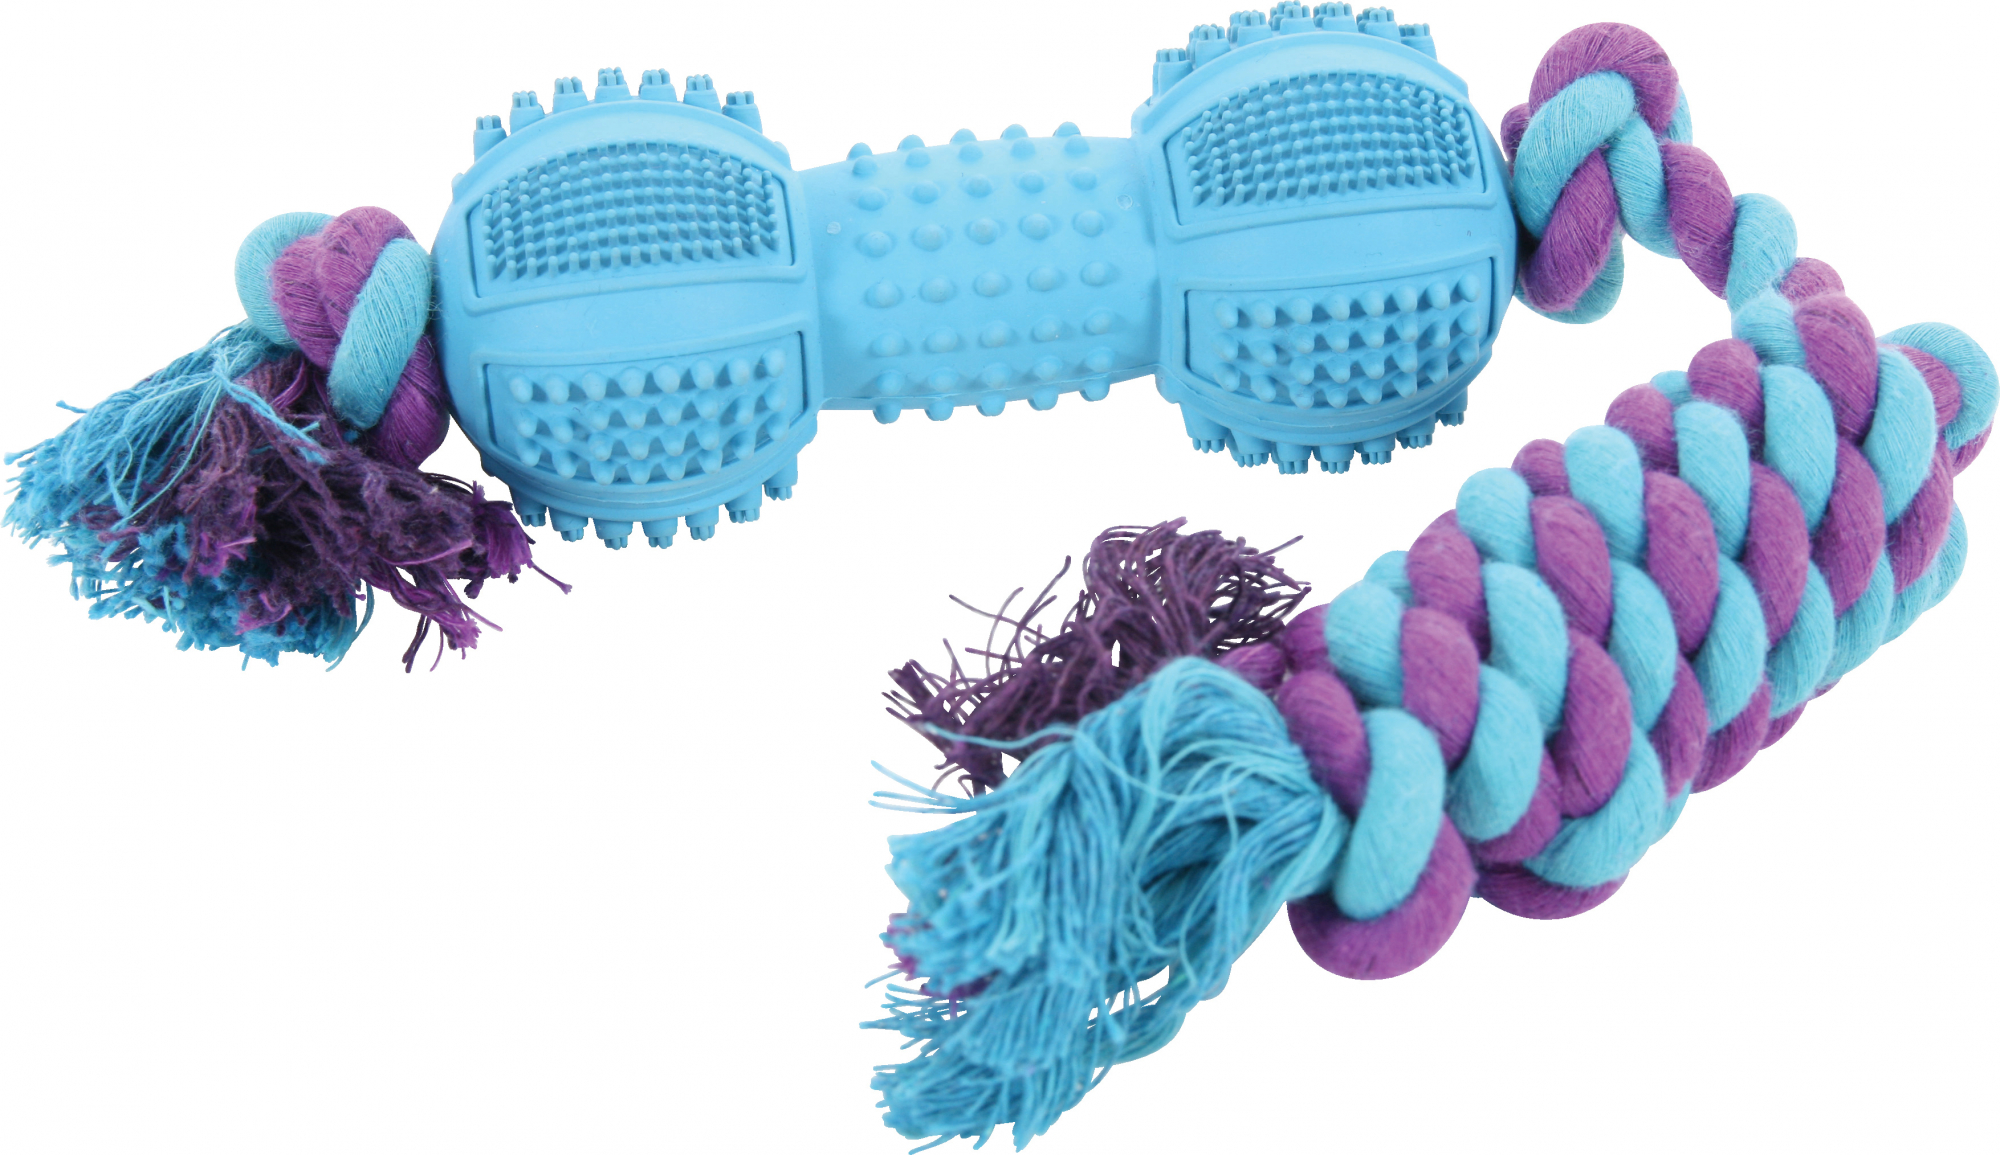 Hundespielzeug Seil mit Gummi -Beißknochen für Hunde